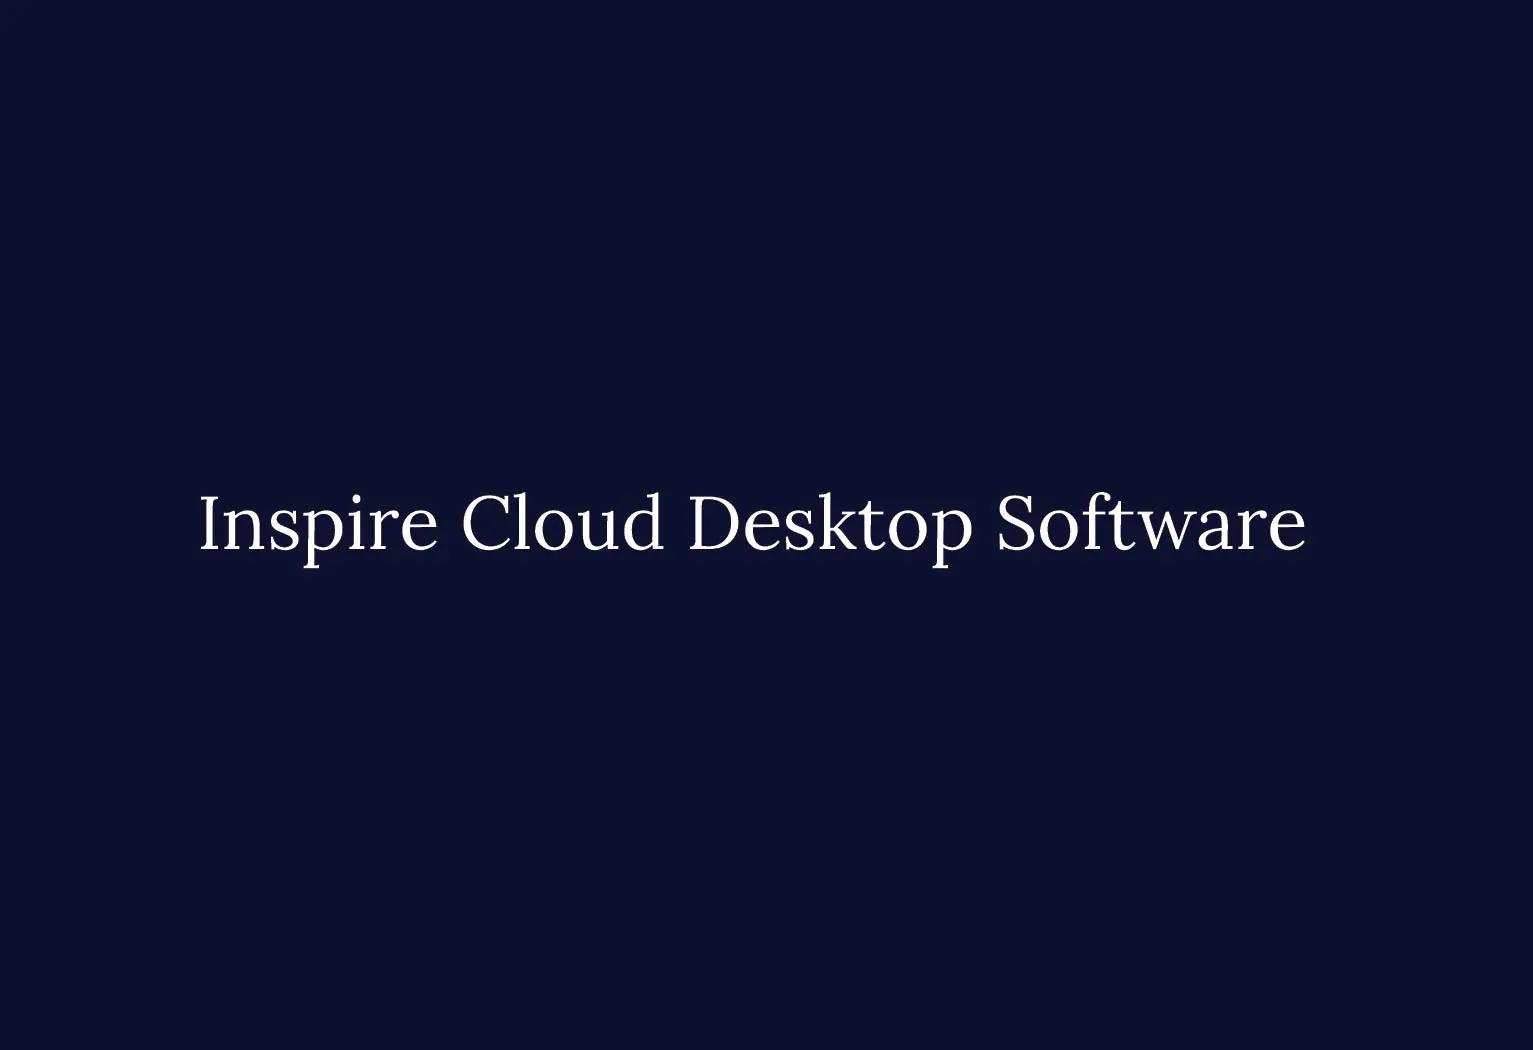 Inspire cloud desktop software